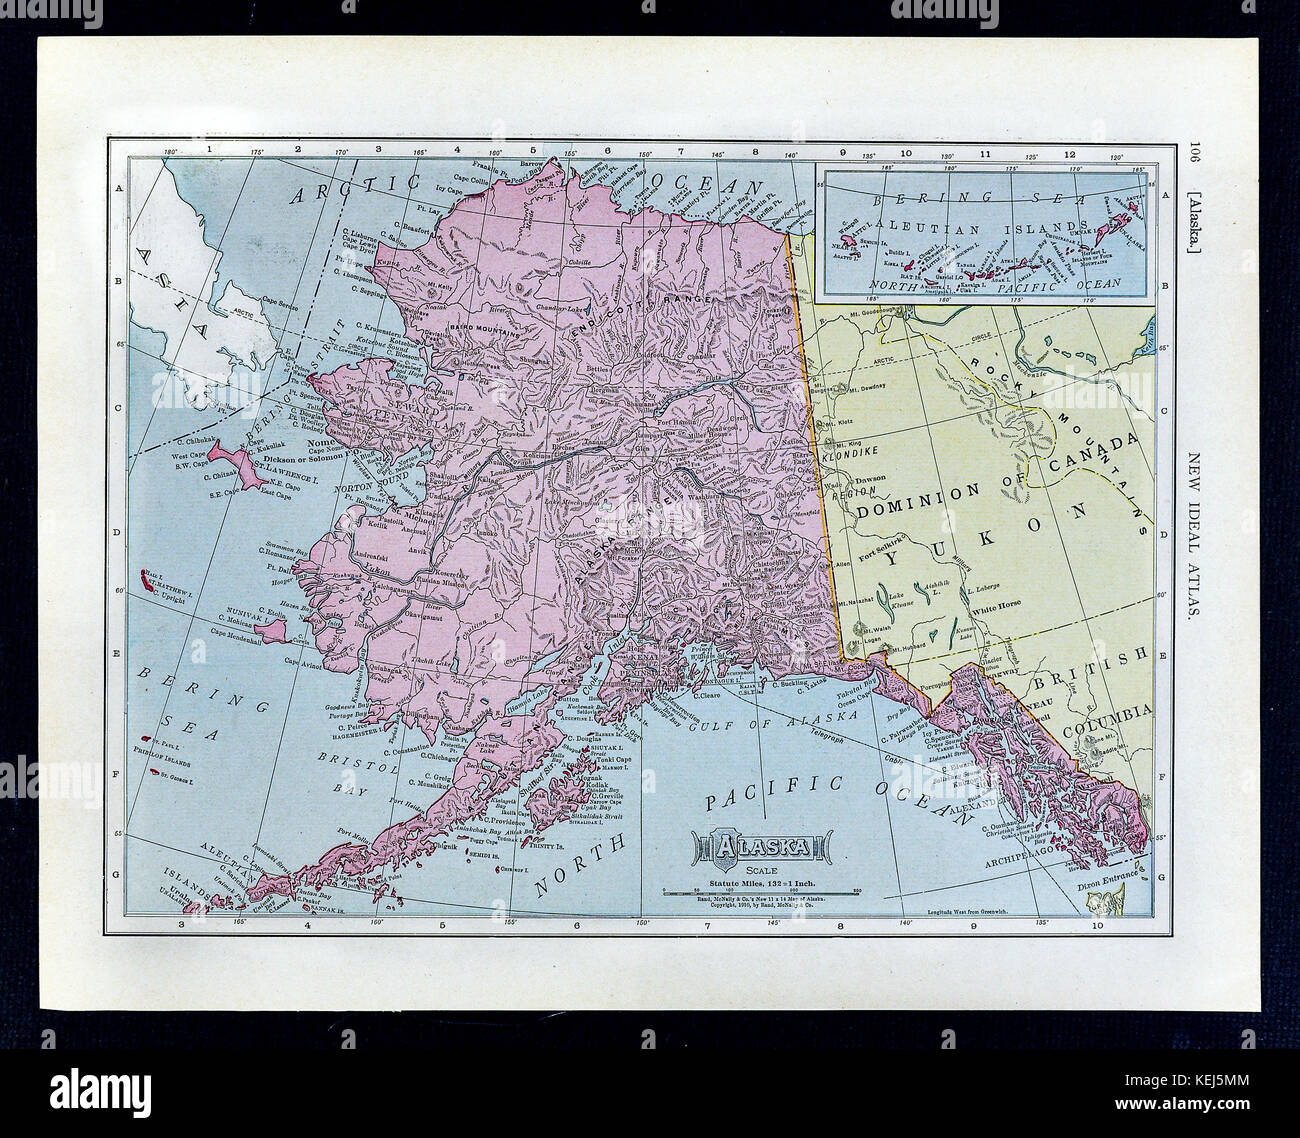 1911 mcnally mappa - Alaska canada juneau sitka klondike yukon dawson Foto Stock